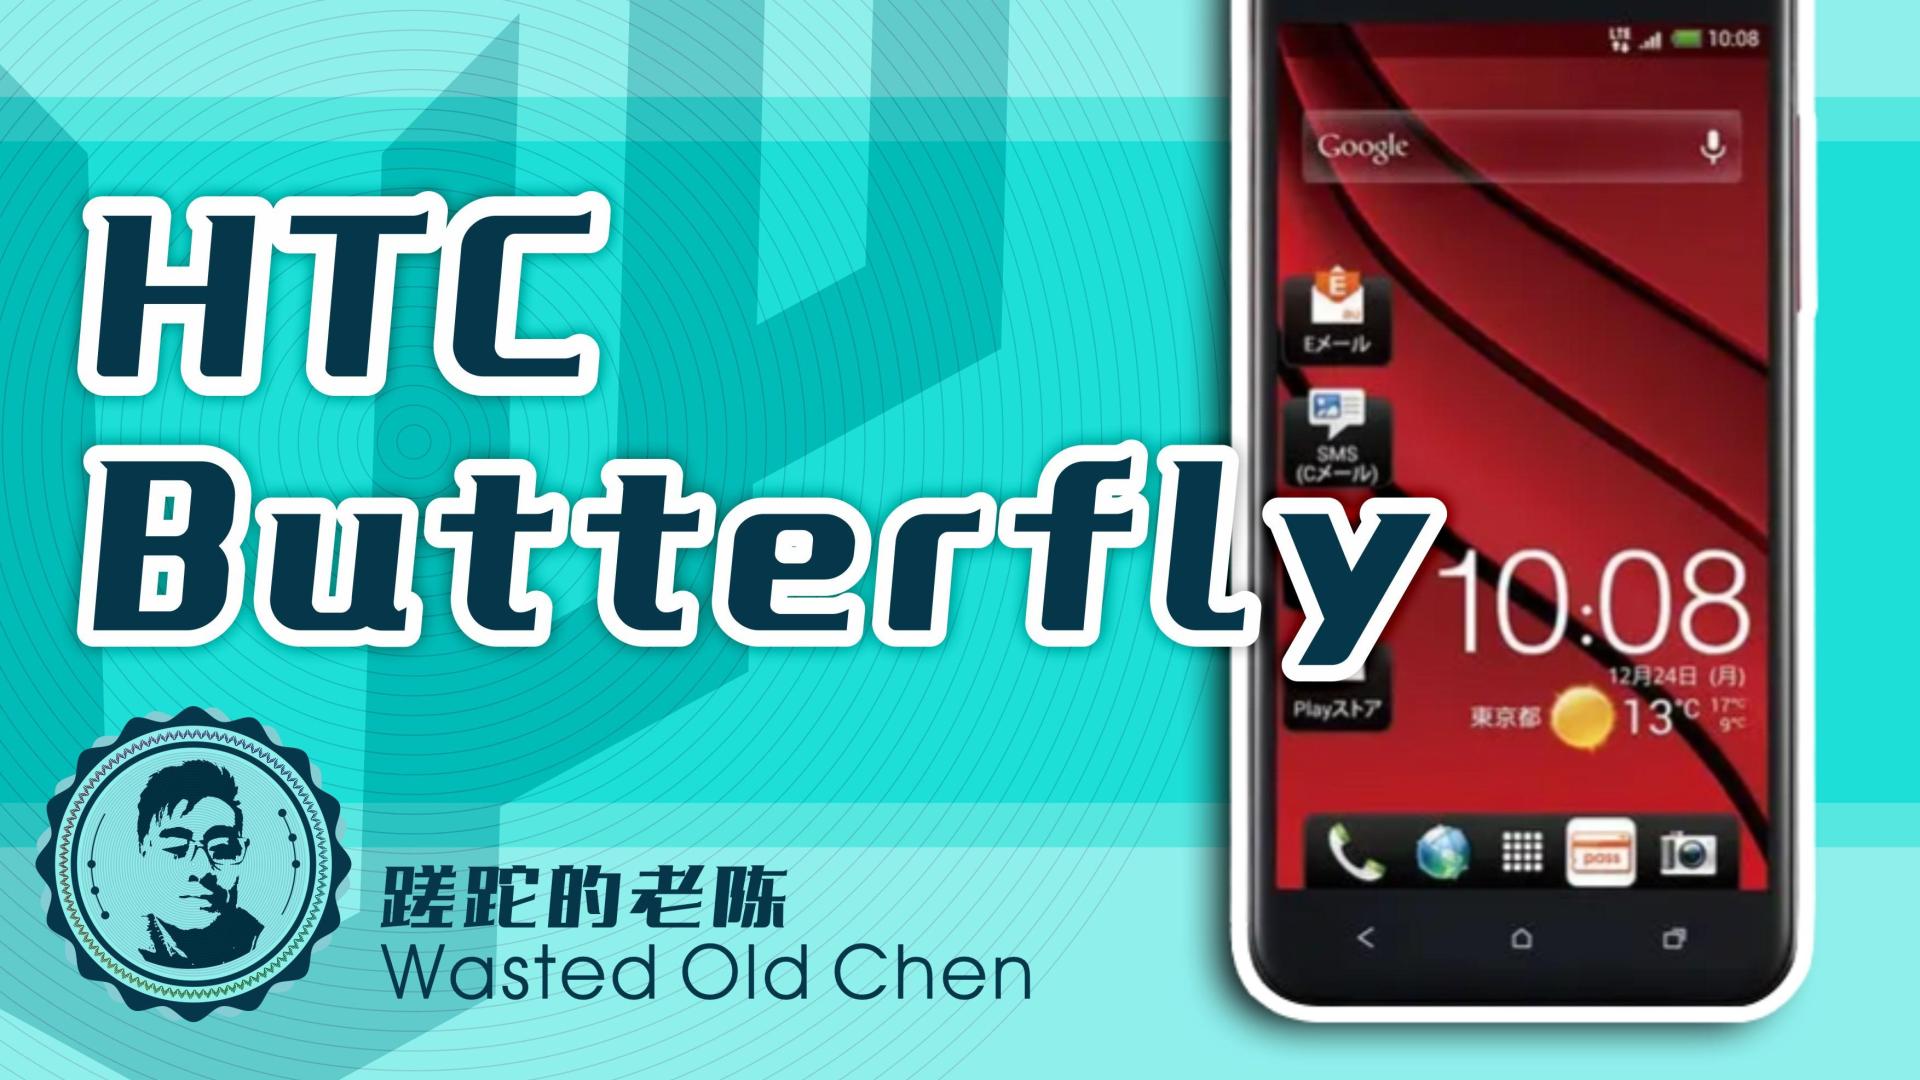 c语言|非一般的“蝴蝶”——HTC Butterfly系手机